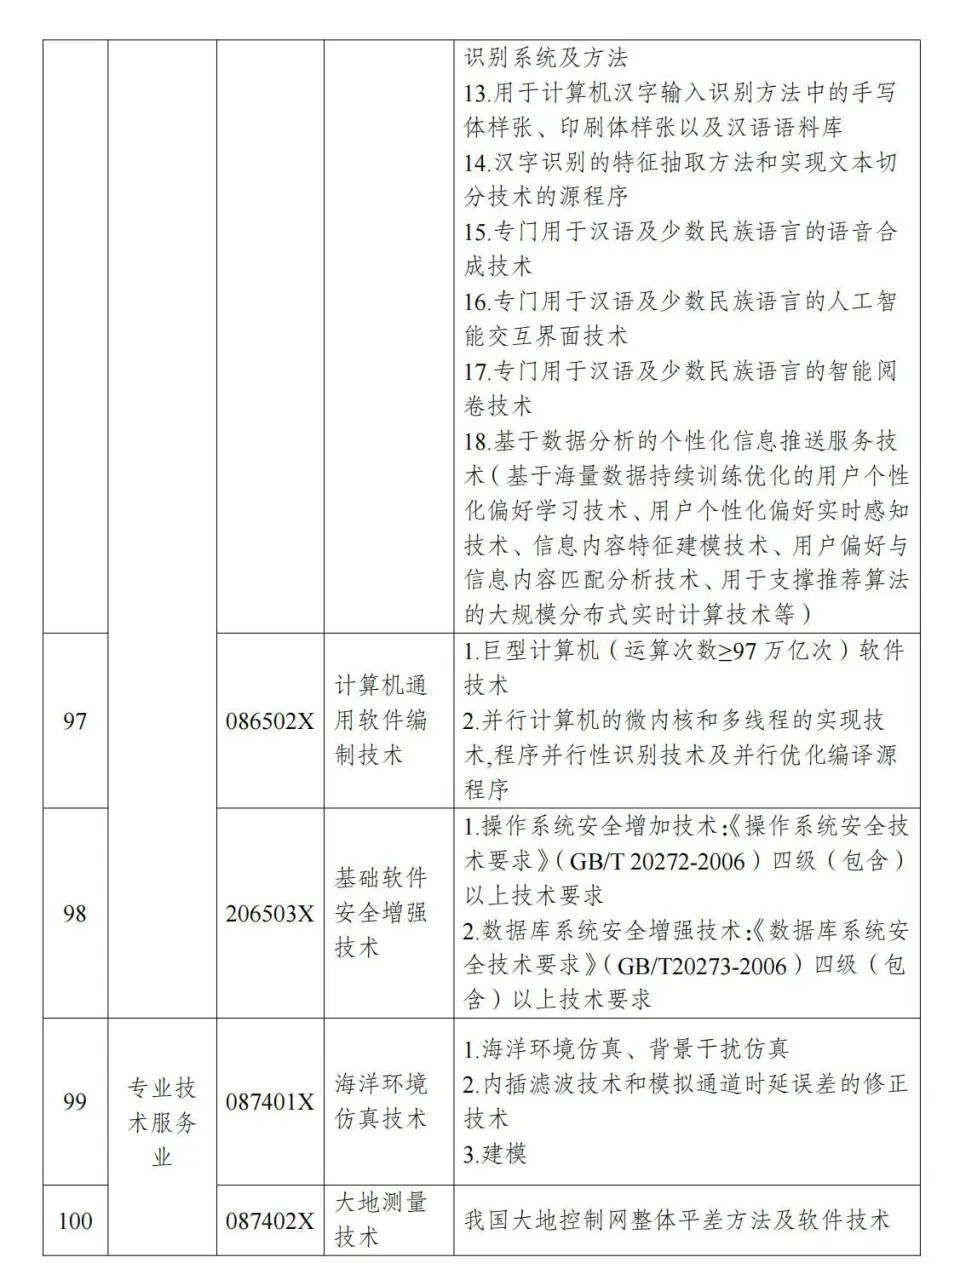 两部分公布《中国制止出口限制出口技术目录》 第23张图片